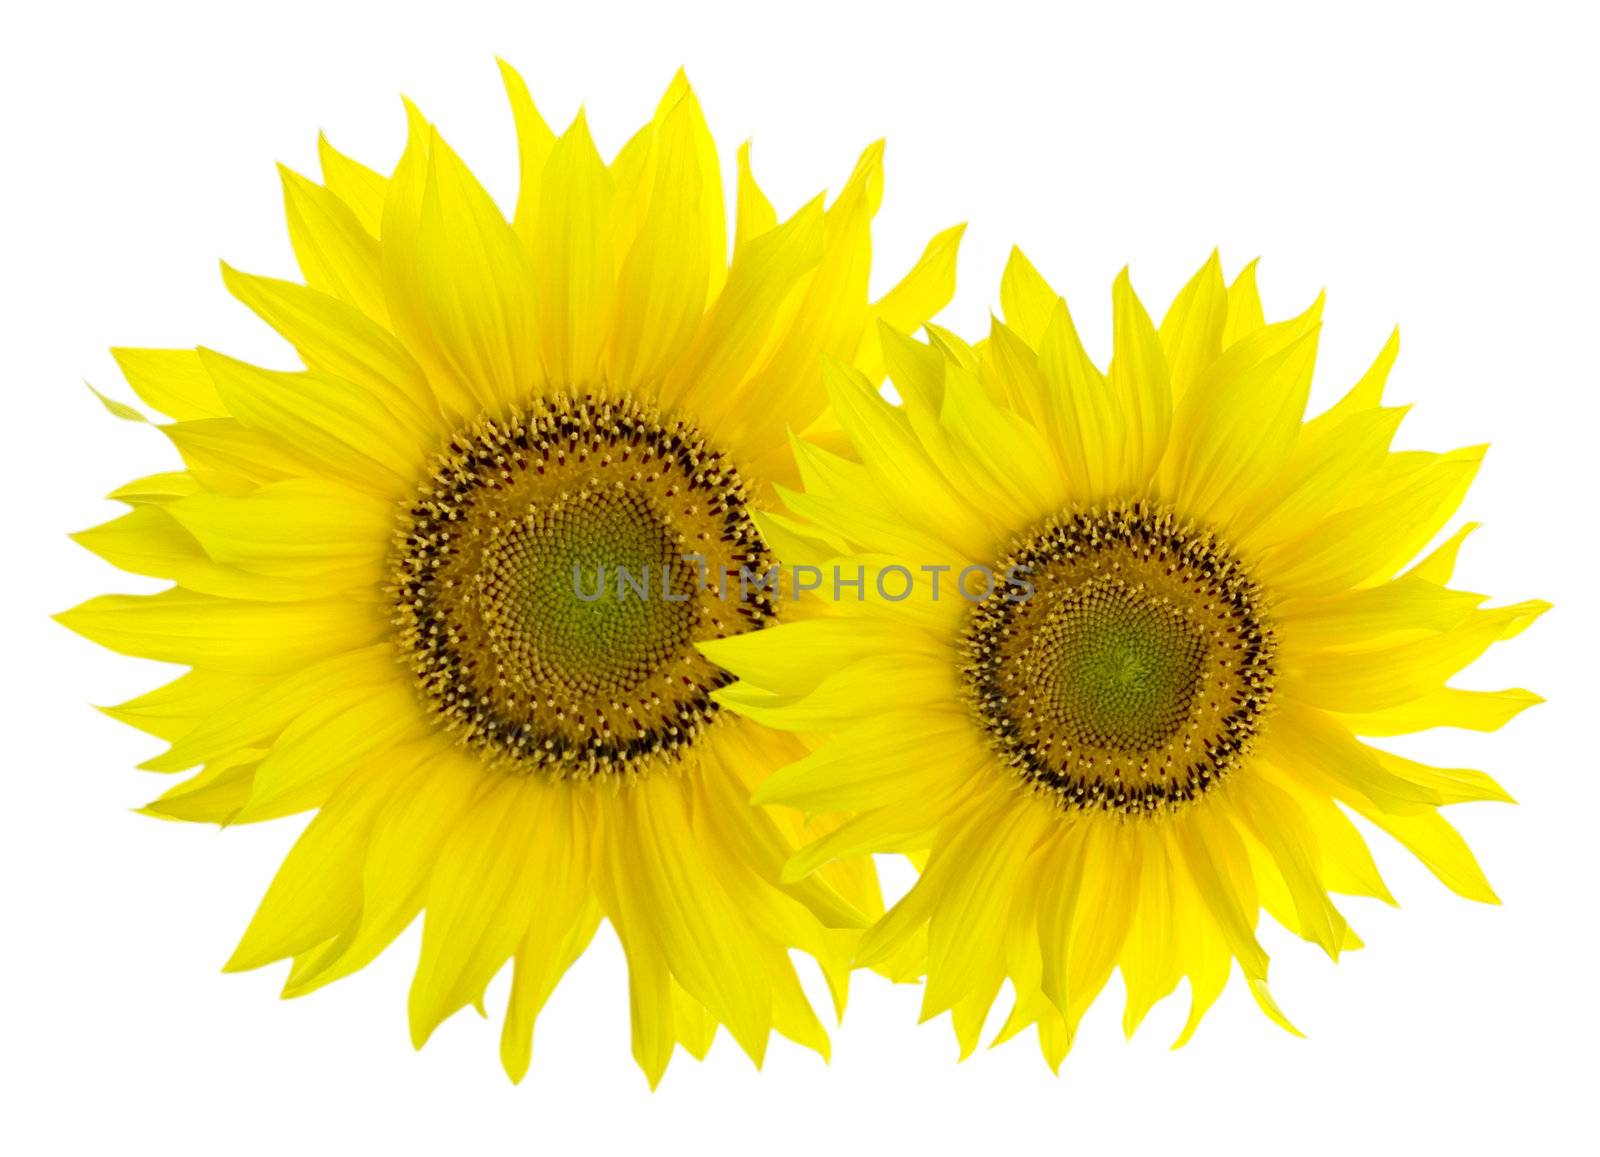 Sunflowers isolated on white by Kudryashka